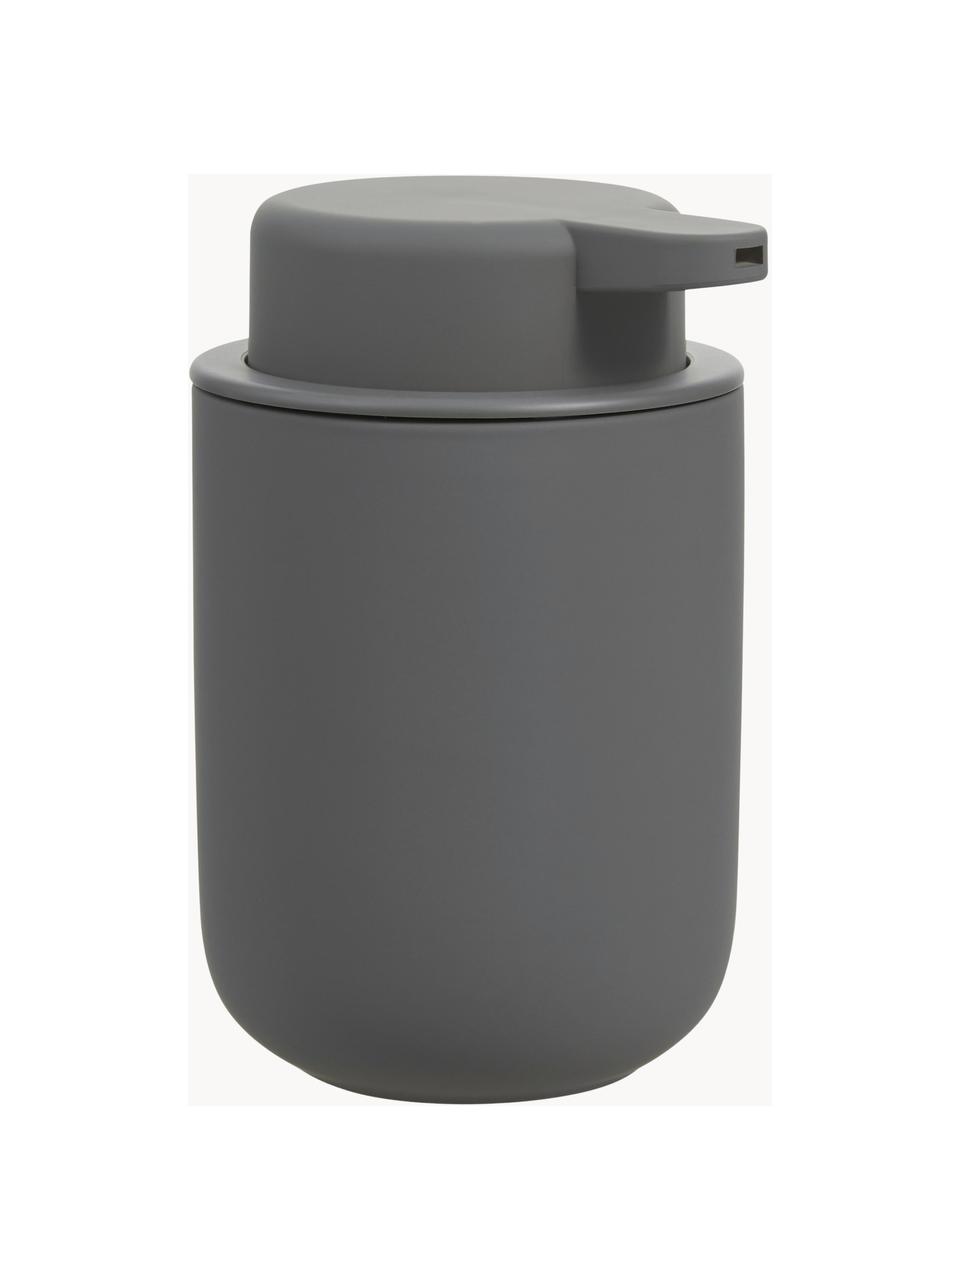 Seifenspender Ume mit Soft-Touch-Oberfläche, Behälter: Steingut überzogen mit So, Dunkelgrau, Ø 8 x H 13 cm